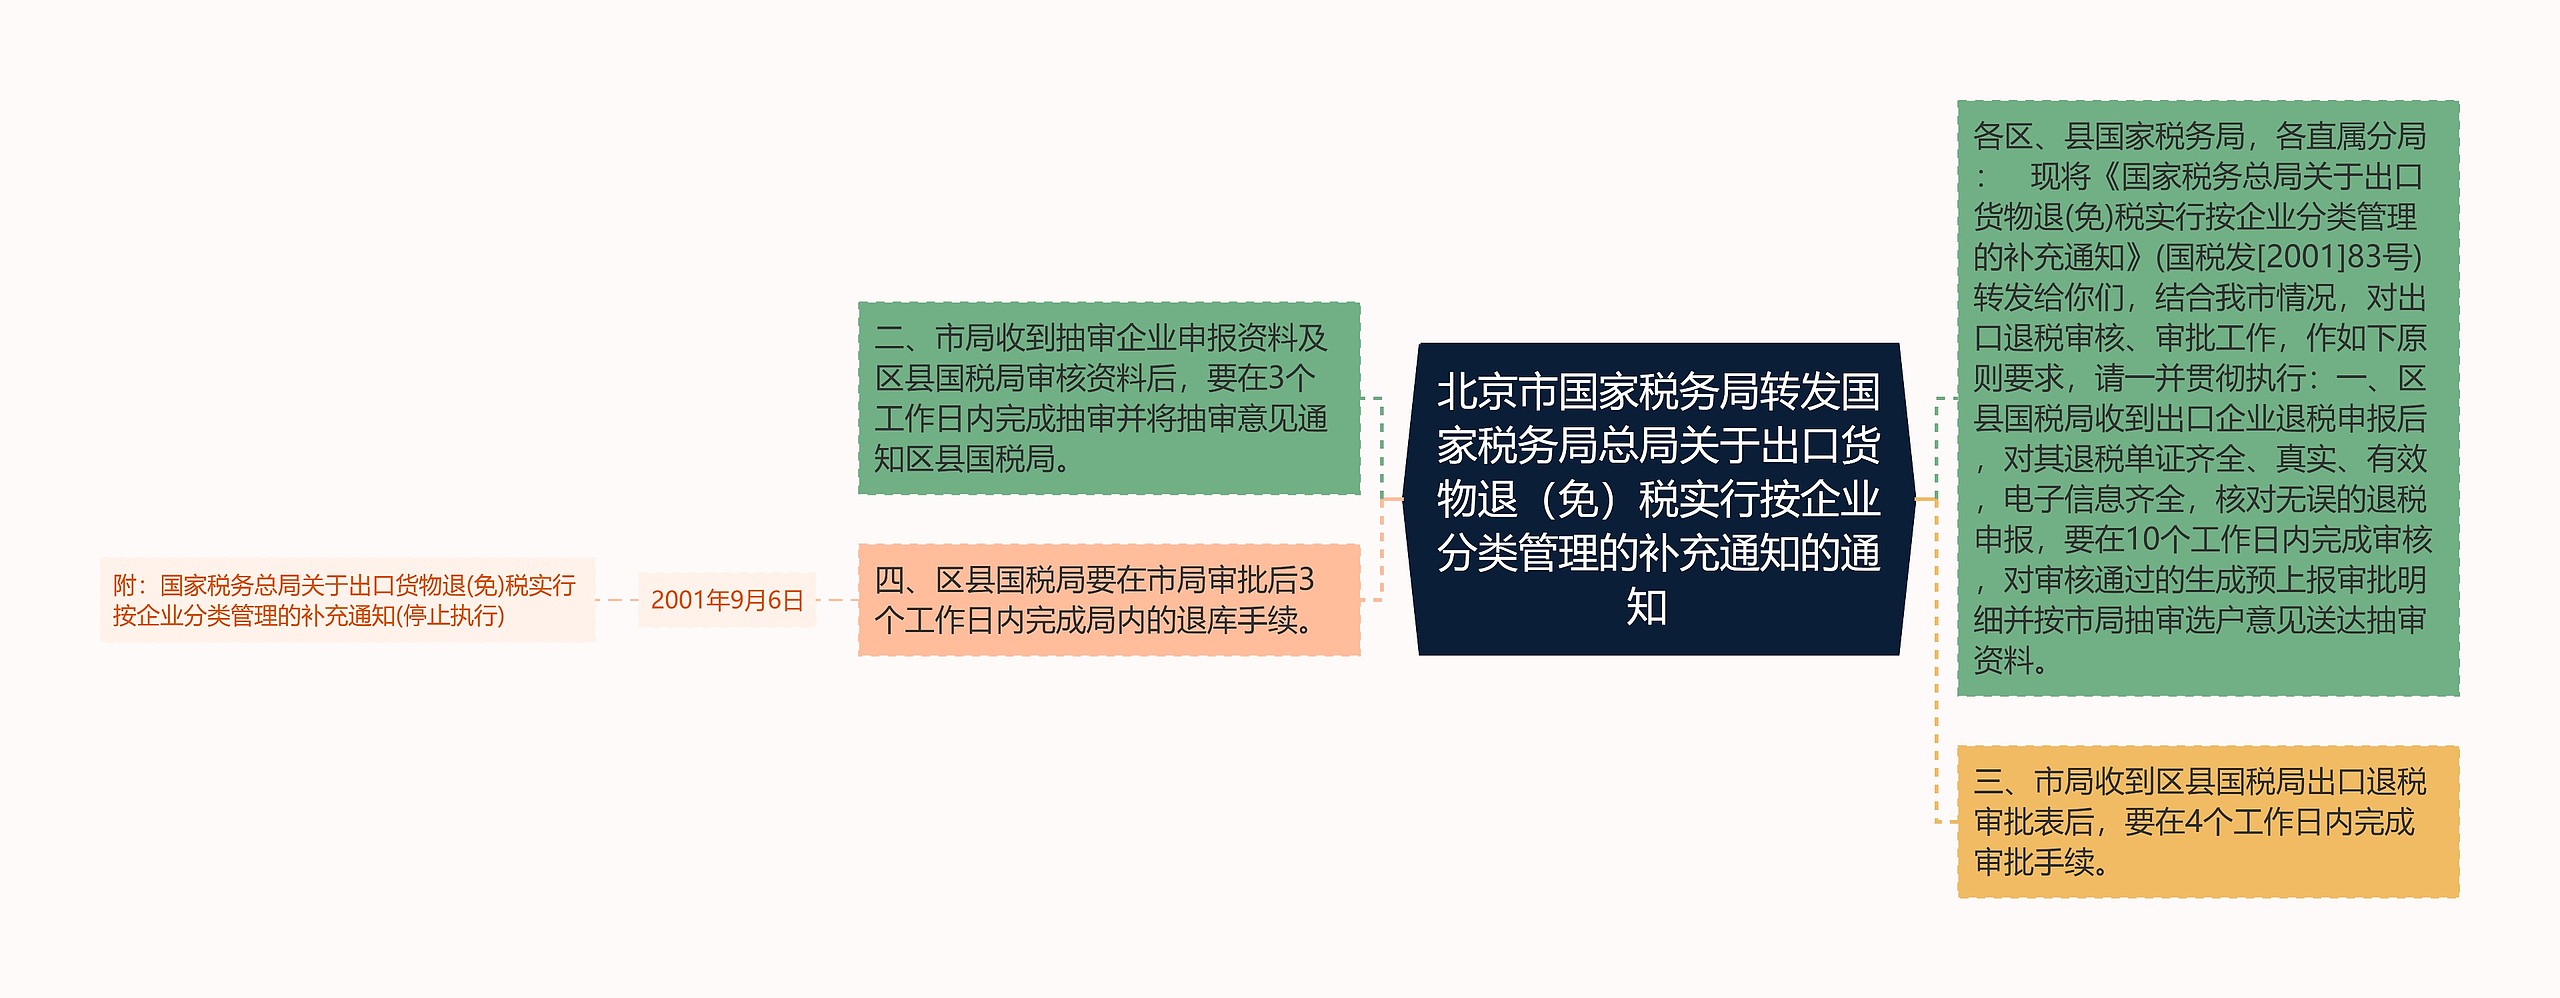 北京市国家税务局转发国家税务局总局关于出口货物退（免）税实行按企业分类管理的补充通知的通知  思维导图